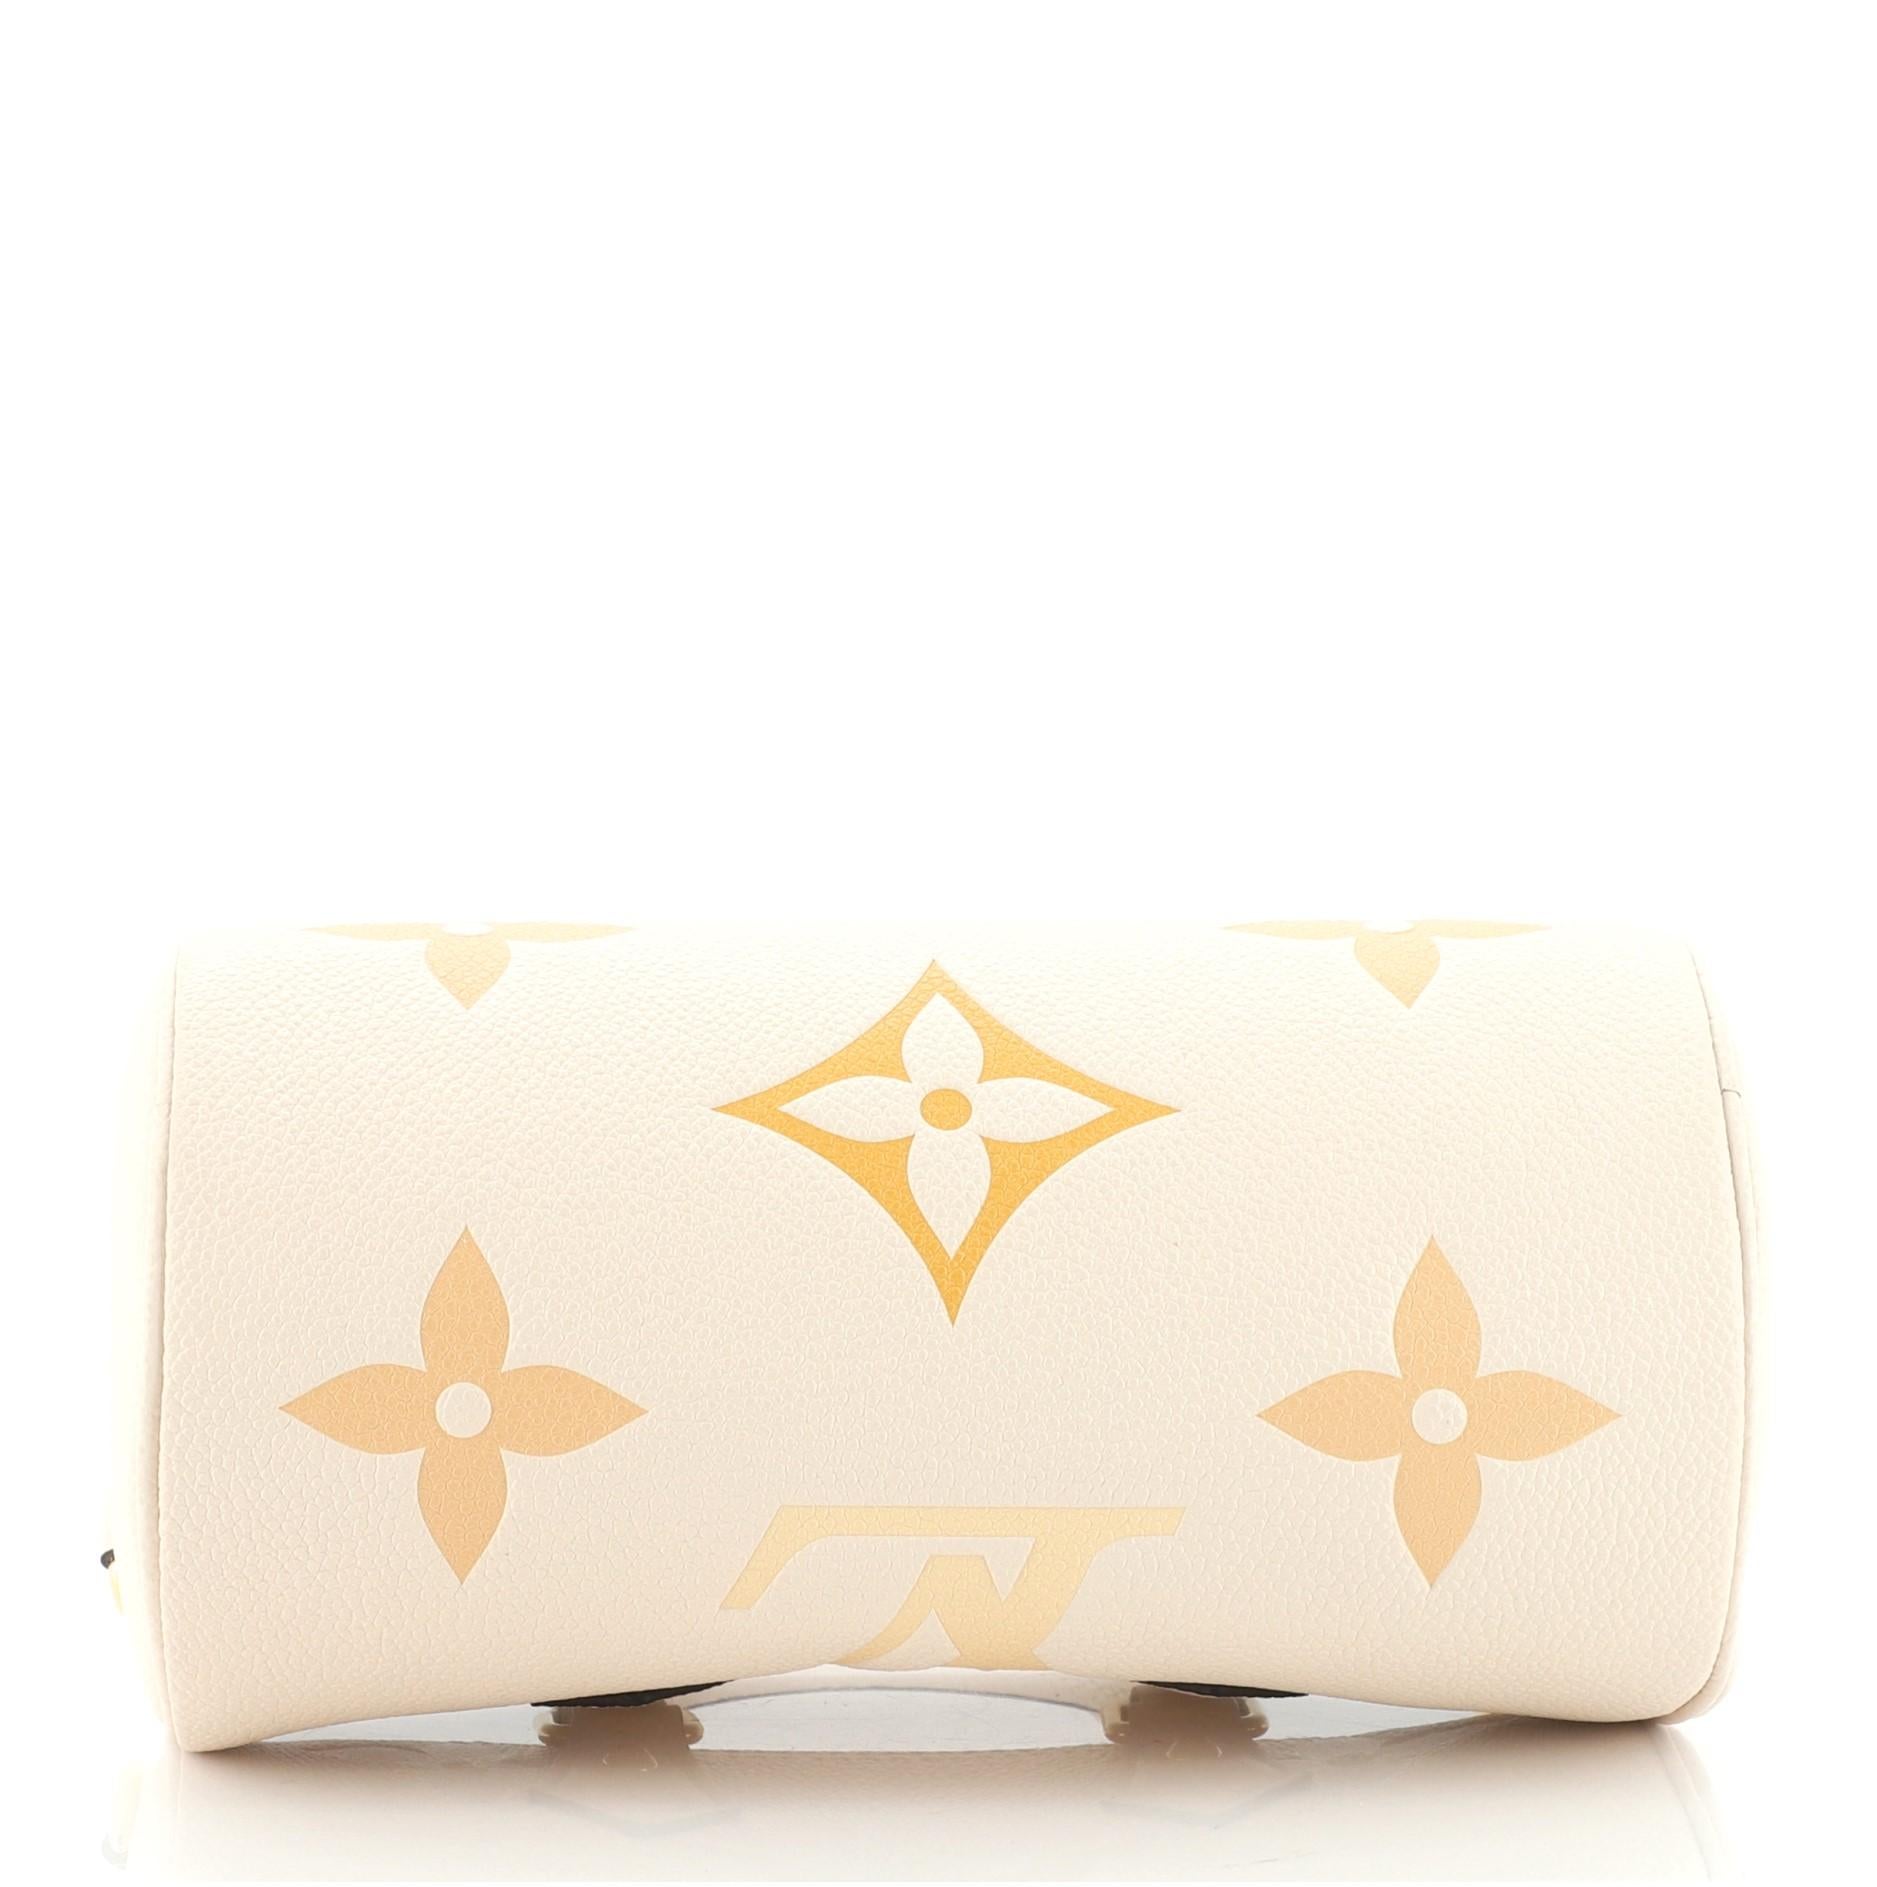 White Louis Vuitton Papillon Handbag By The Pool Monogram Empreinte Giant BB